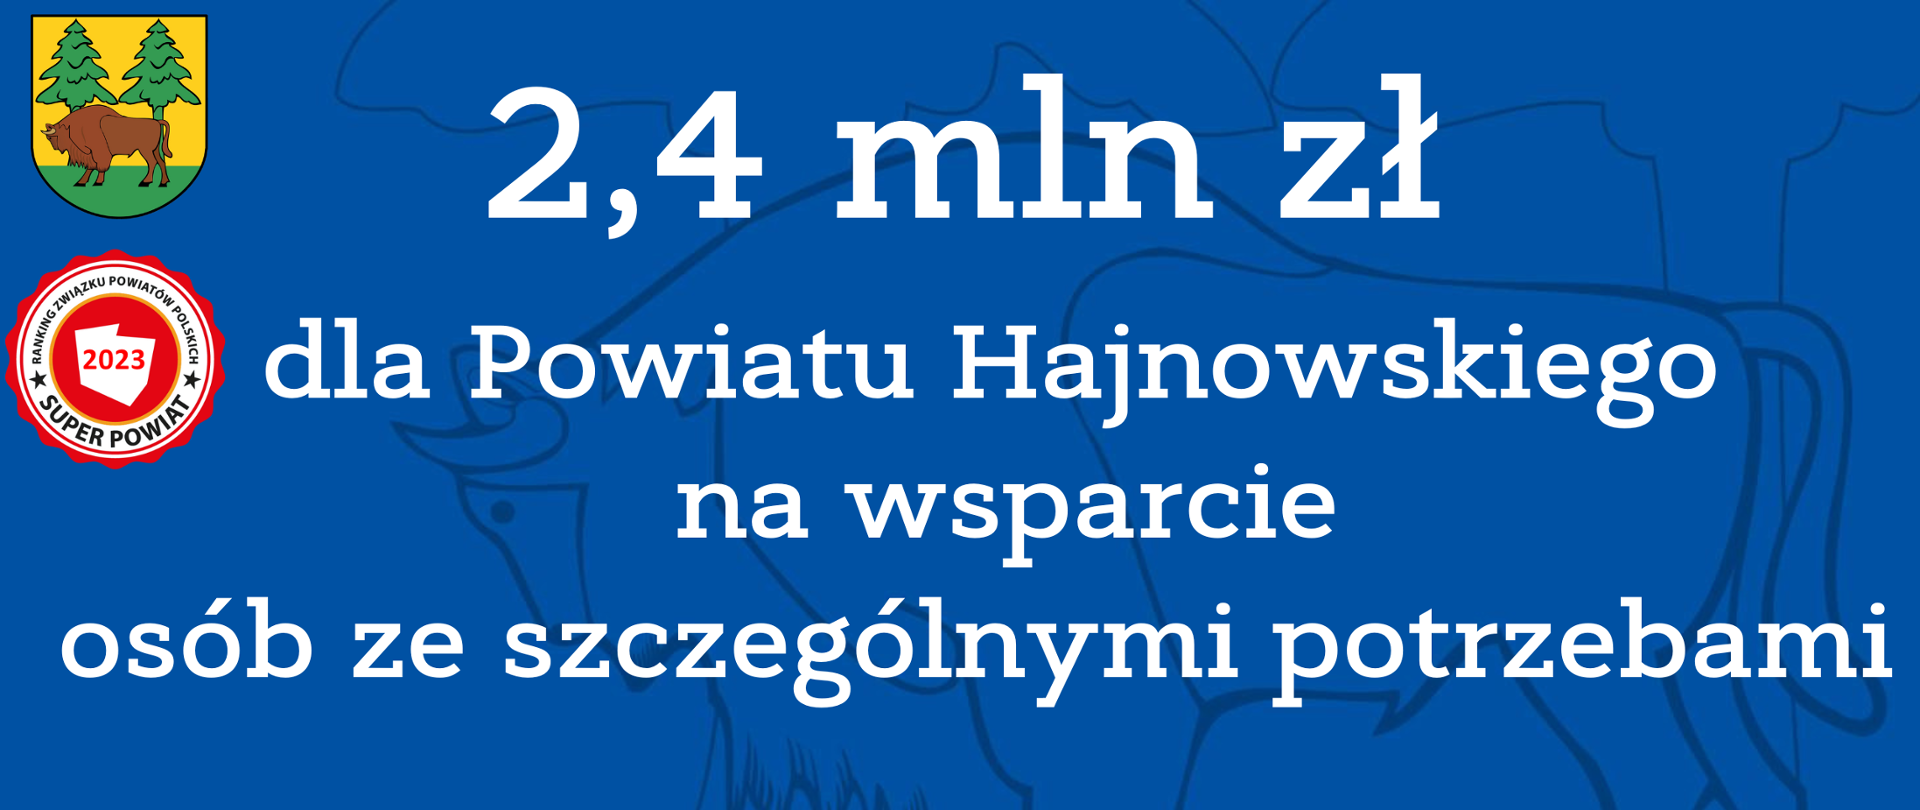 2,4 mln zł dla Powiatu Hajnowskiego na wsparcie osób ze szczególnymi potrzebami